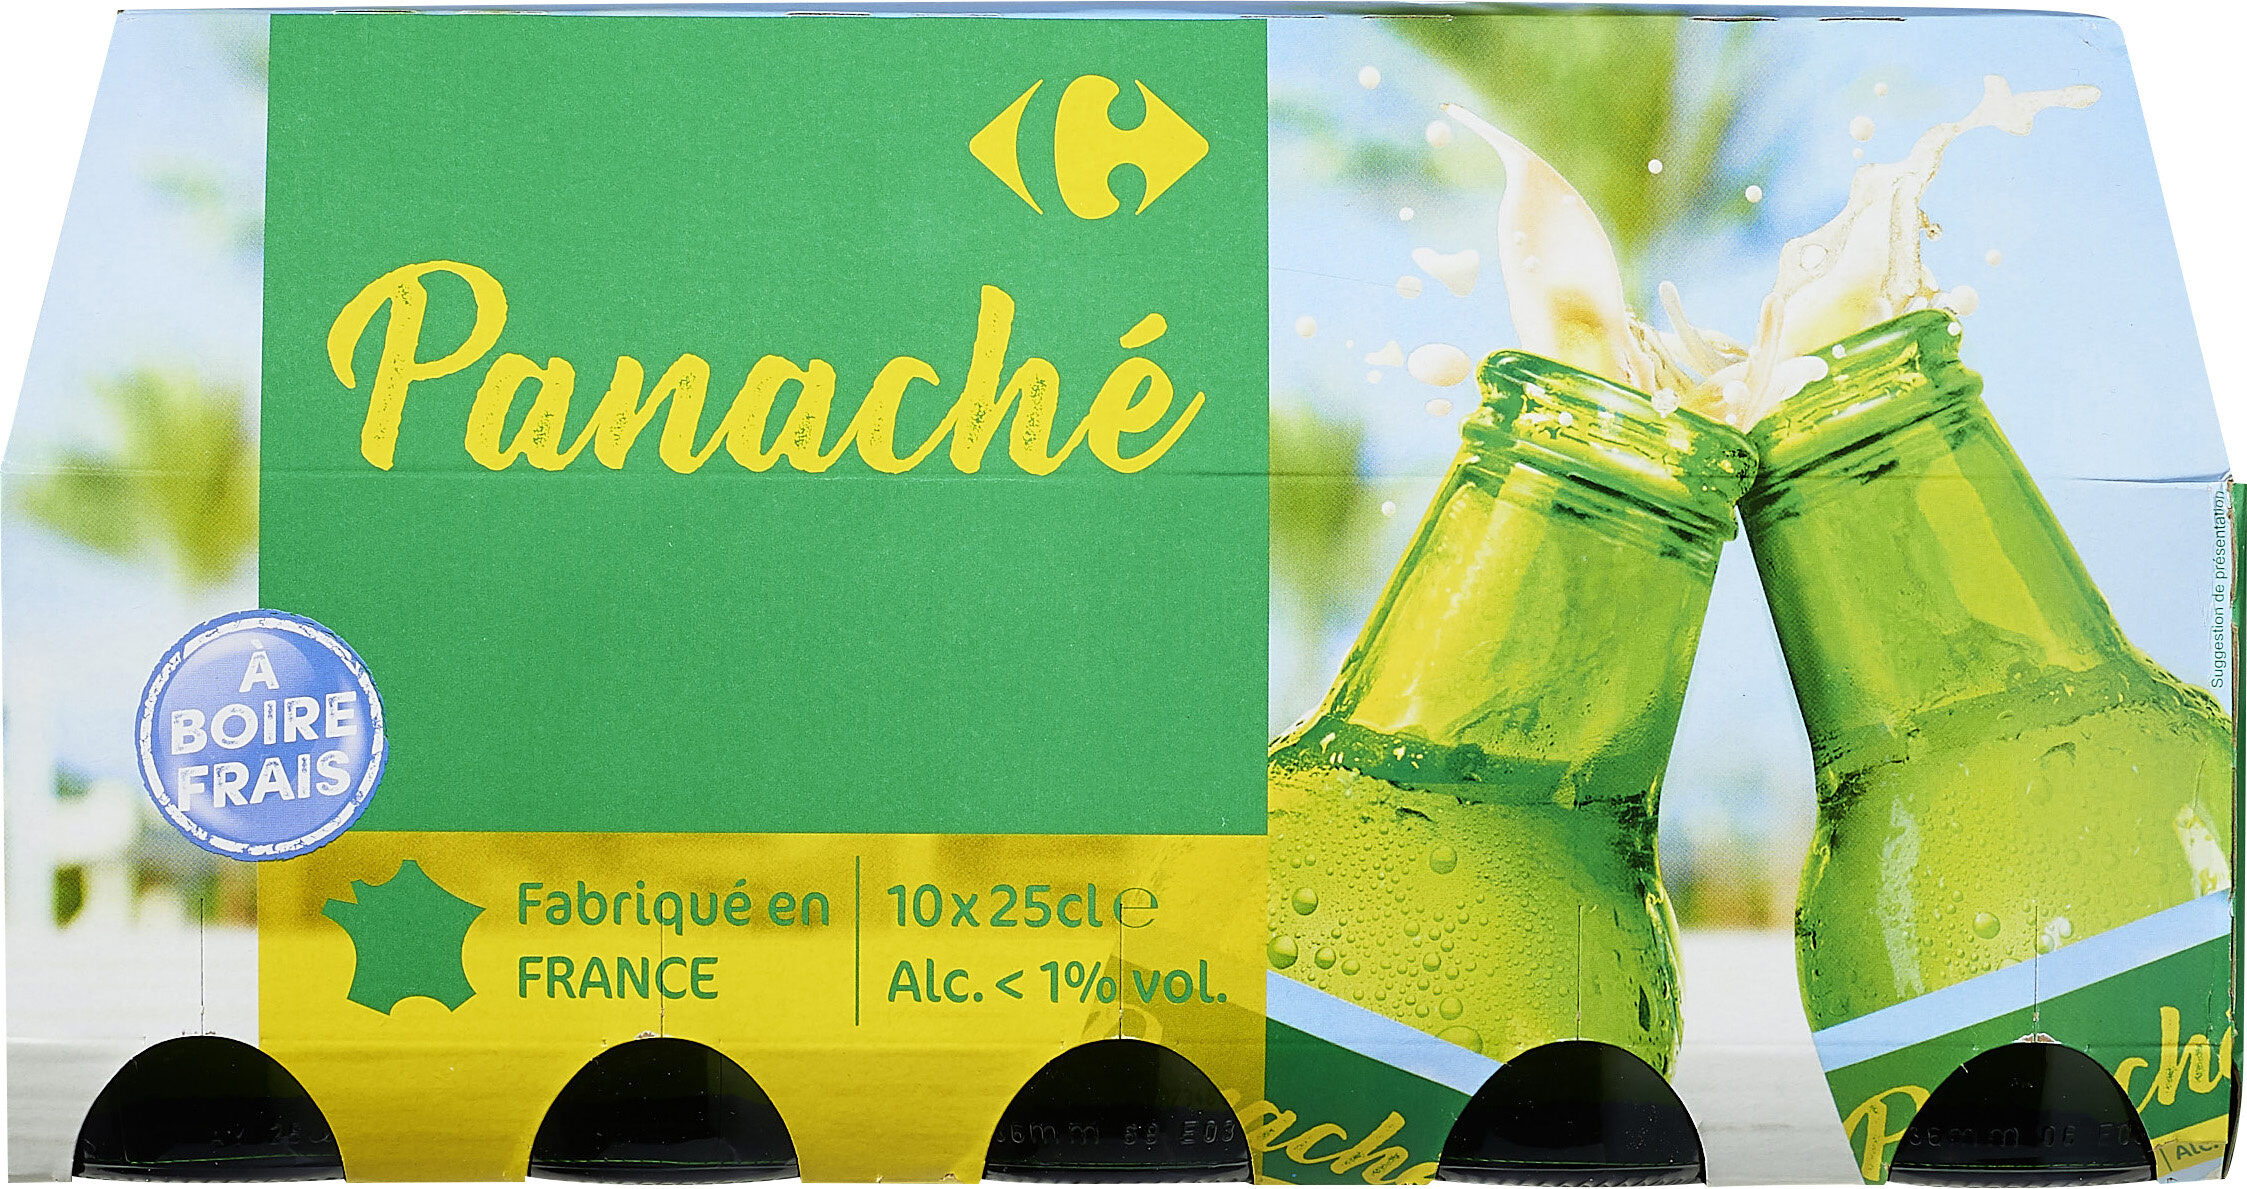 Panaché - Produkt - fr